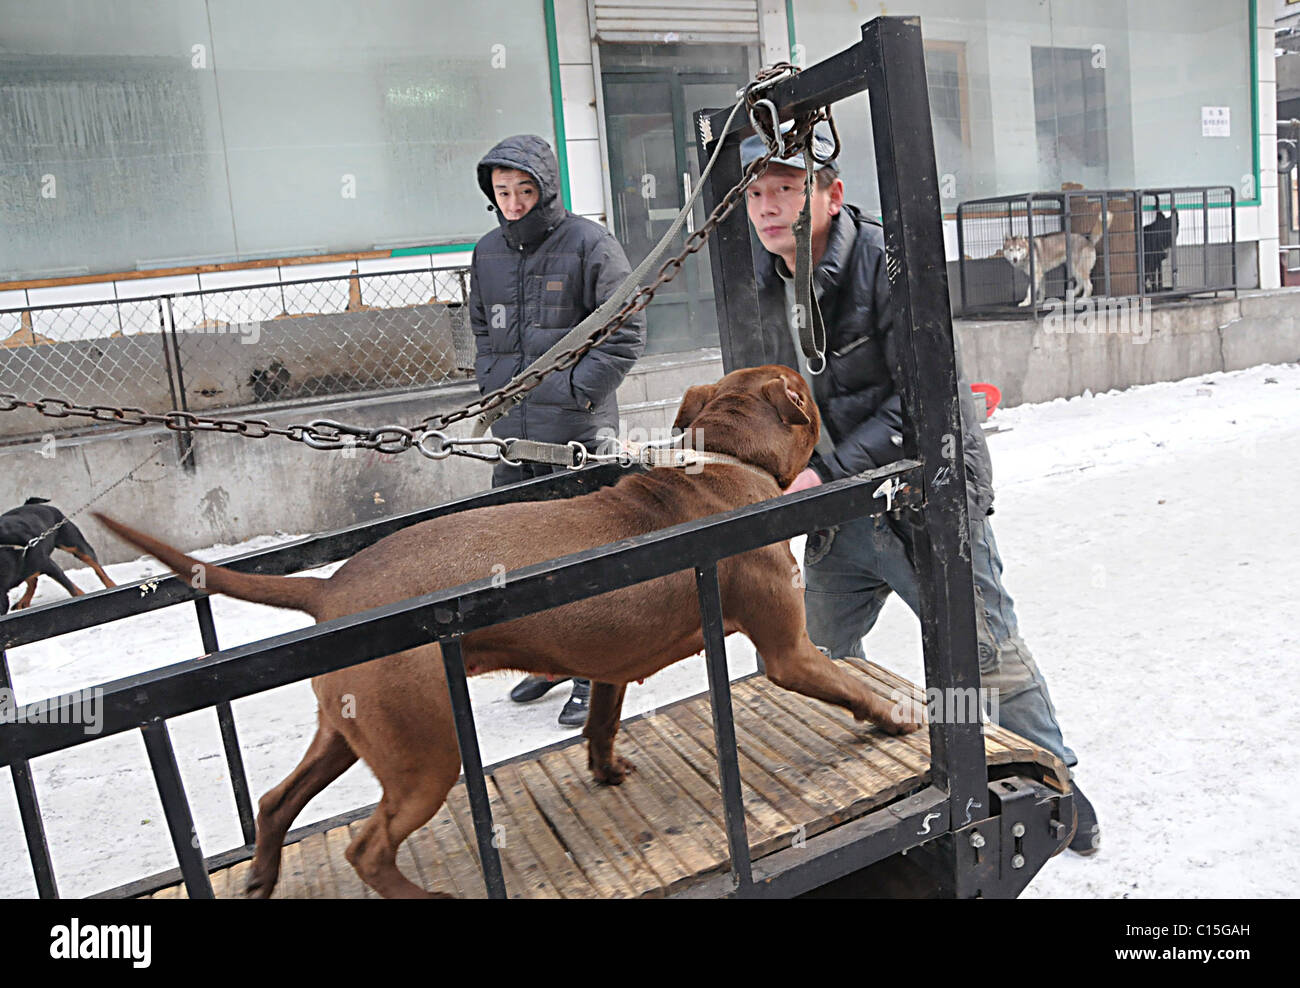 Tapis roulant en levrette une activité inventive propriétaire d'animal de  Harbin, Chine promène son chien sur un tapis roulant. L'homme explique aux  curieux Photo Stock - Alamy